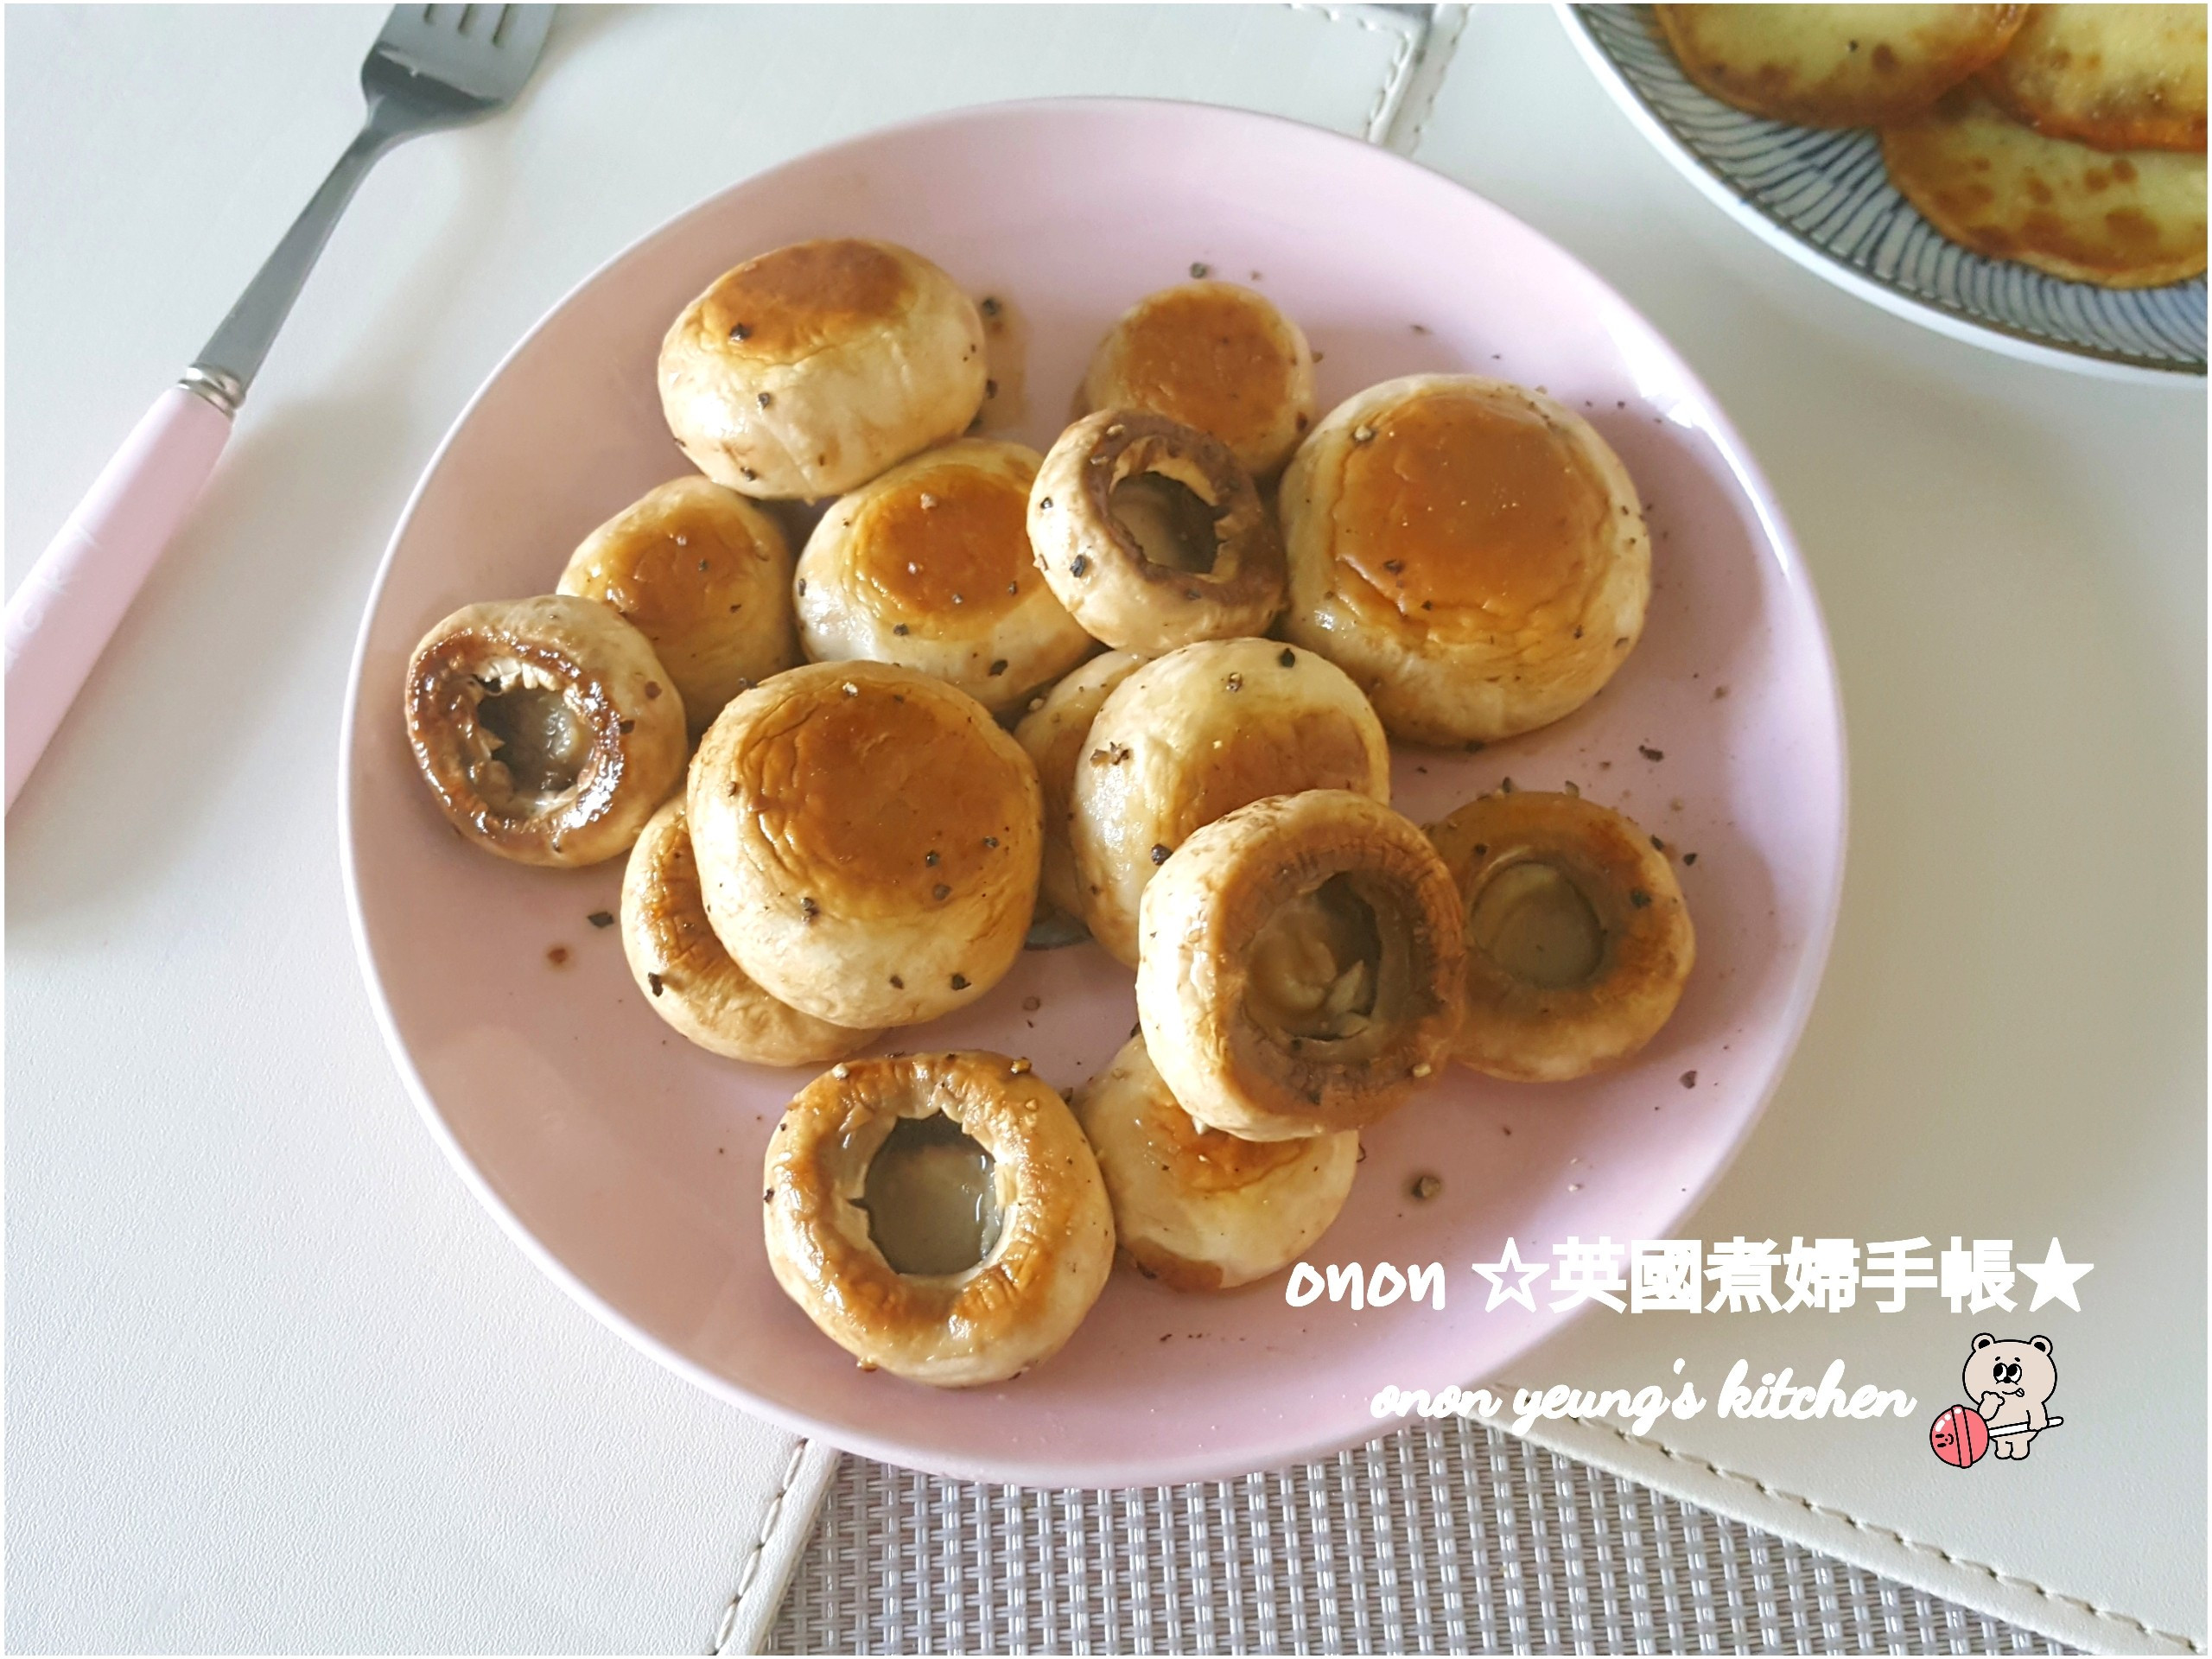 奶油炒蘑菇 🍄洋菇
新手家常早餐。晚餐